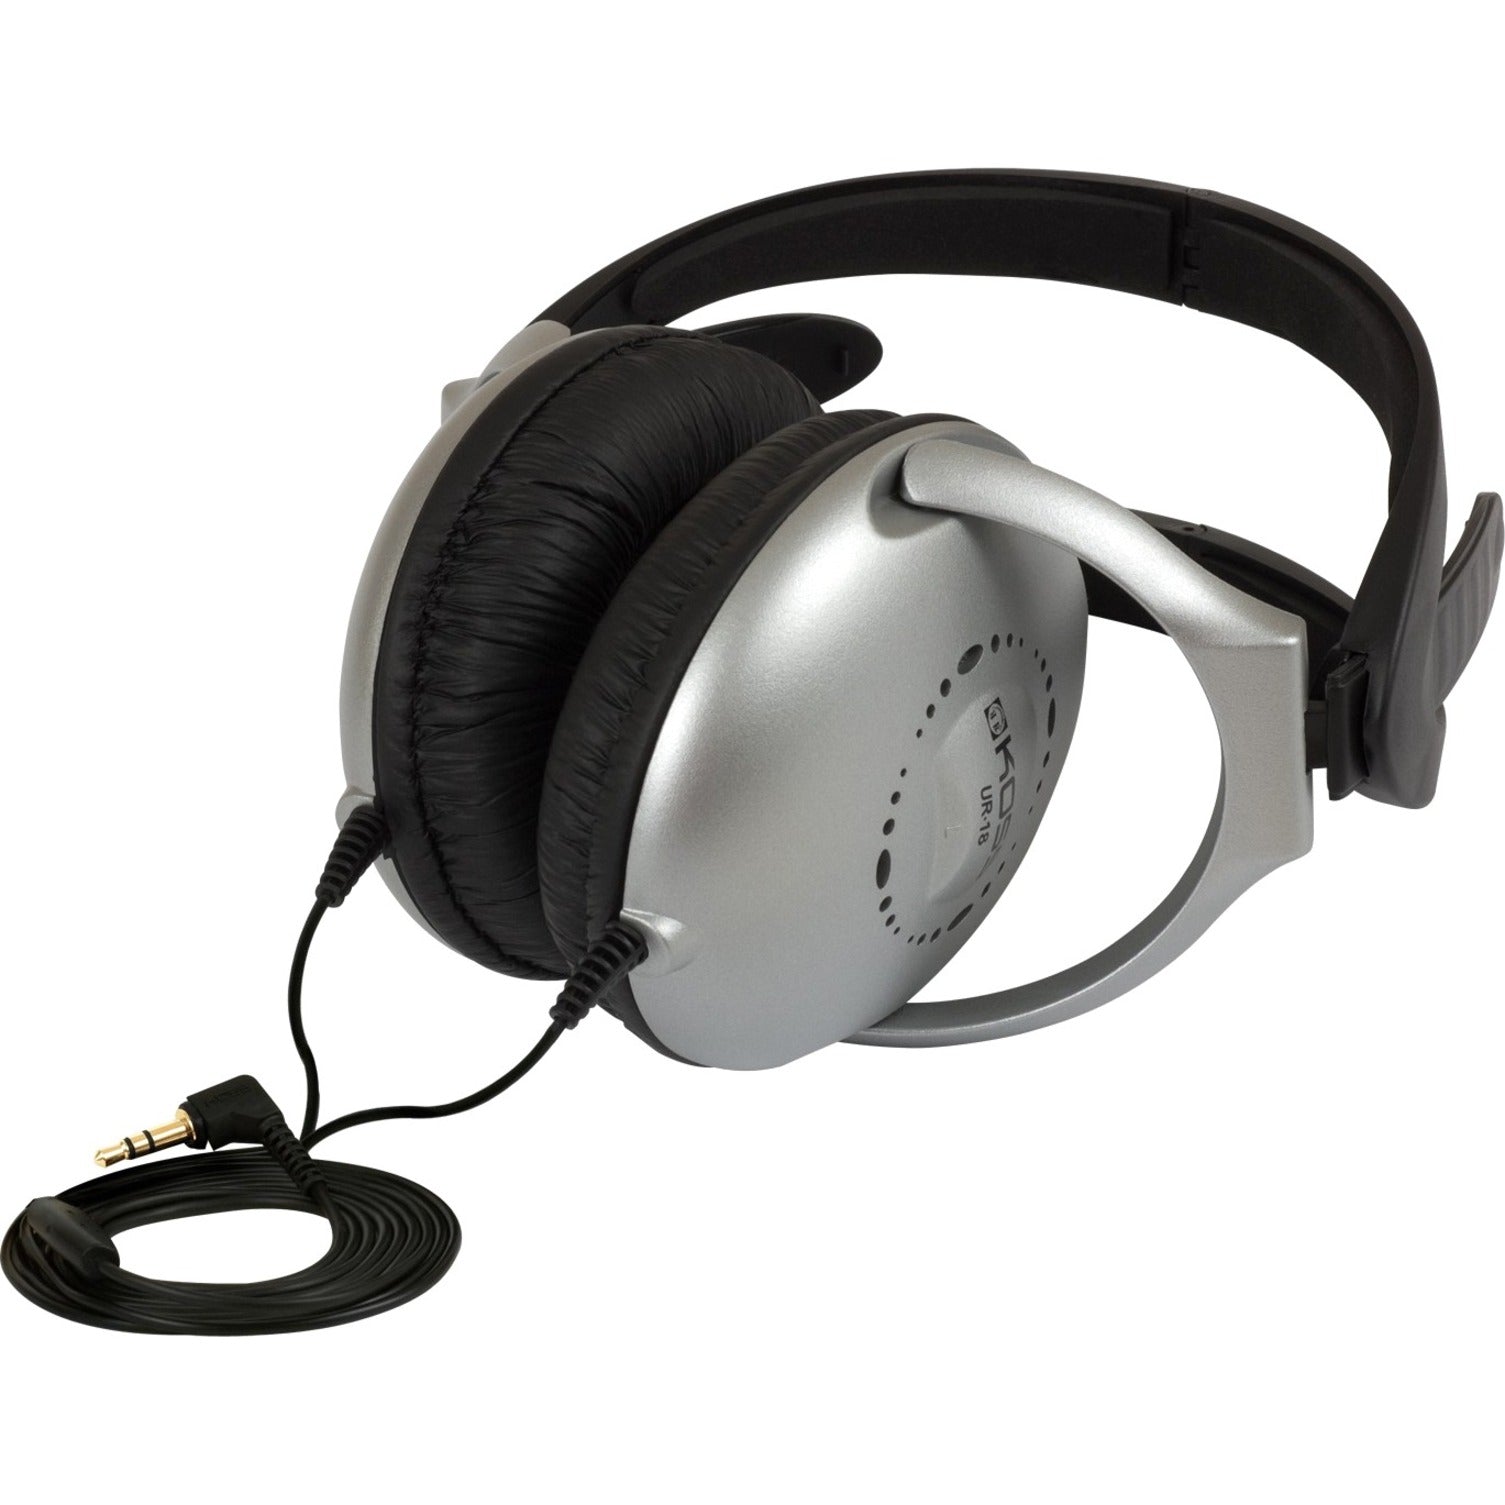 Koss UR18 Folding Home Theater Stereo Headphones, Adjustable Headband, Deep Bass, Lightweight